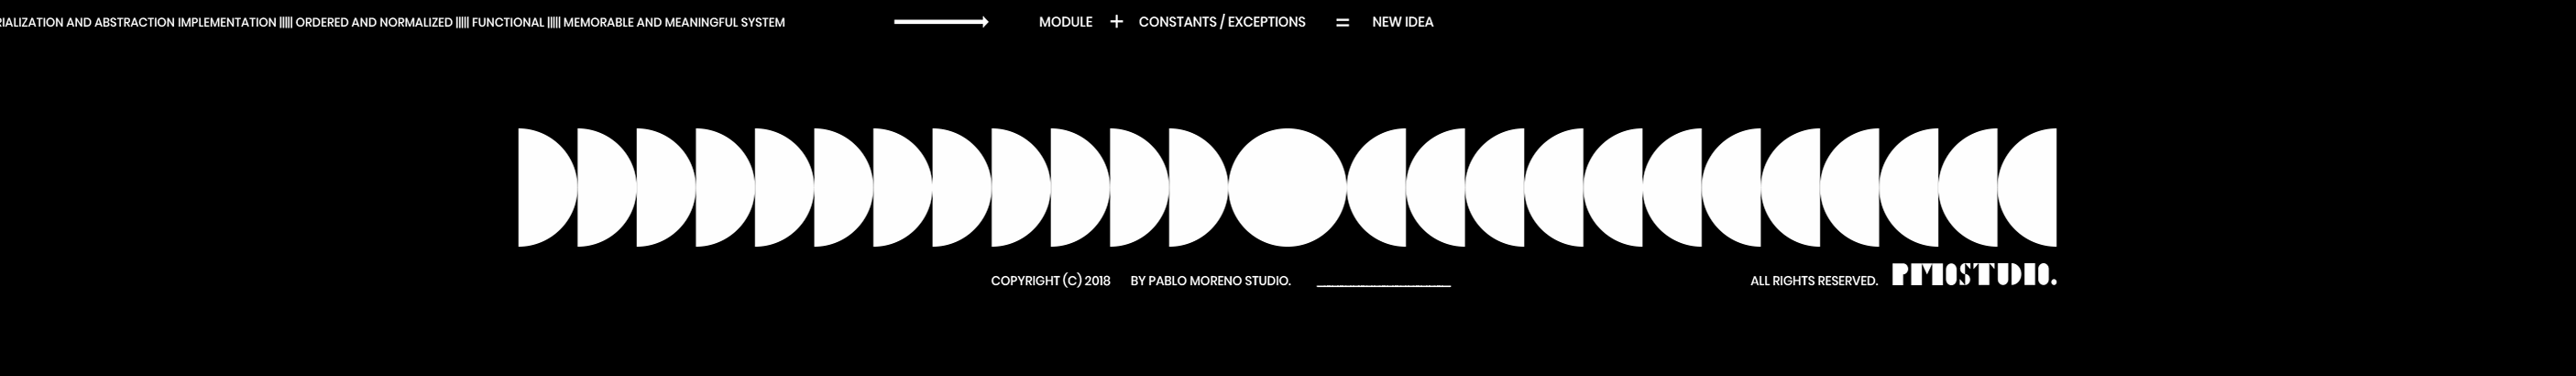 pablo MORENO's profile banner